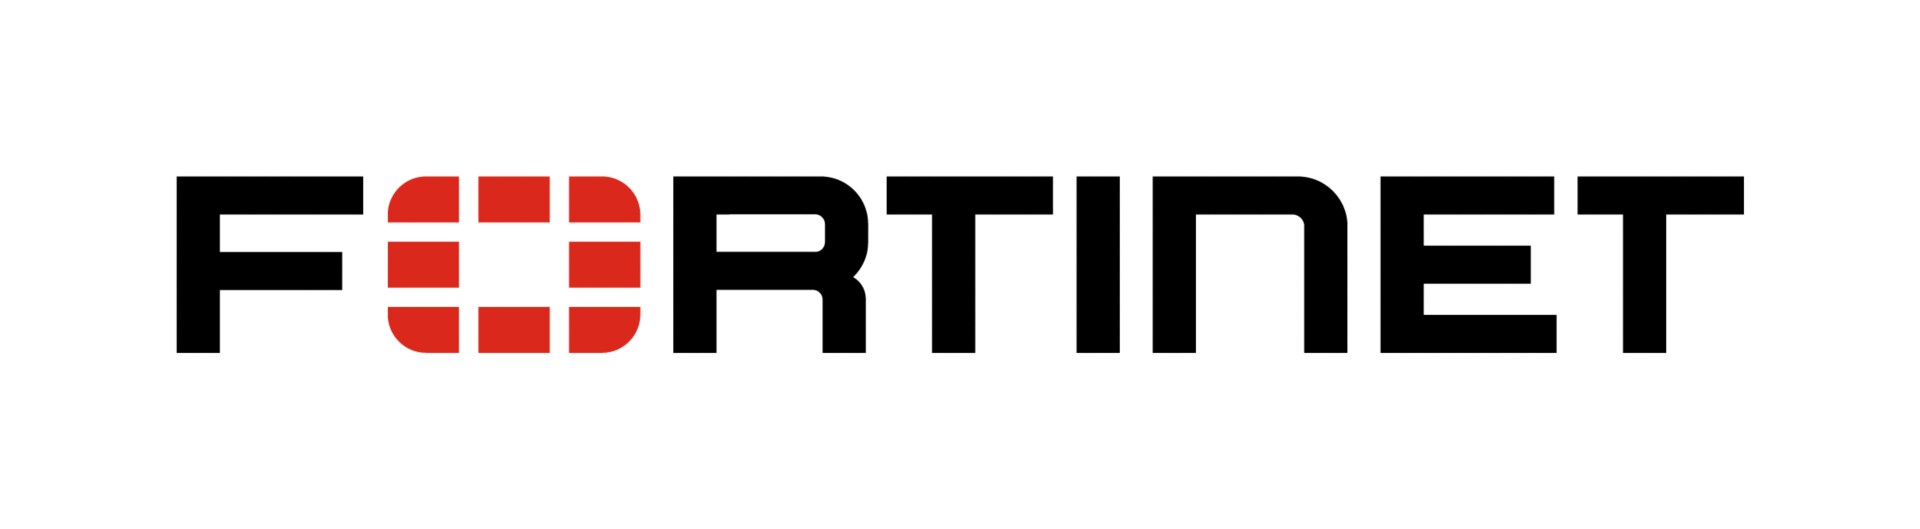 FortiGuard UTM Bundle for FortiGate-VM01V - subscription license renewal (3 years) + FortiCare 24x7 - 1 license